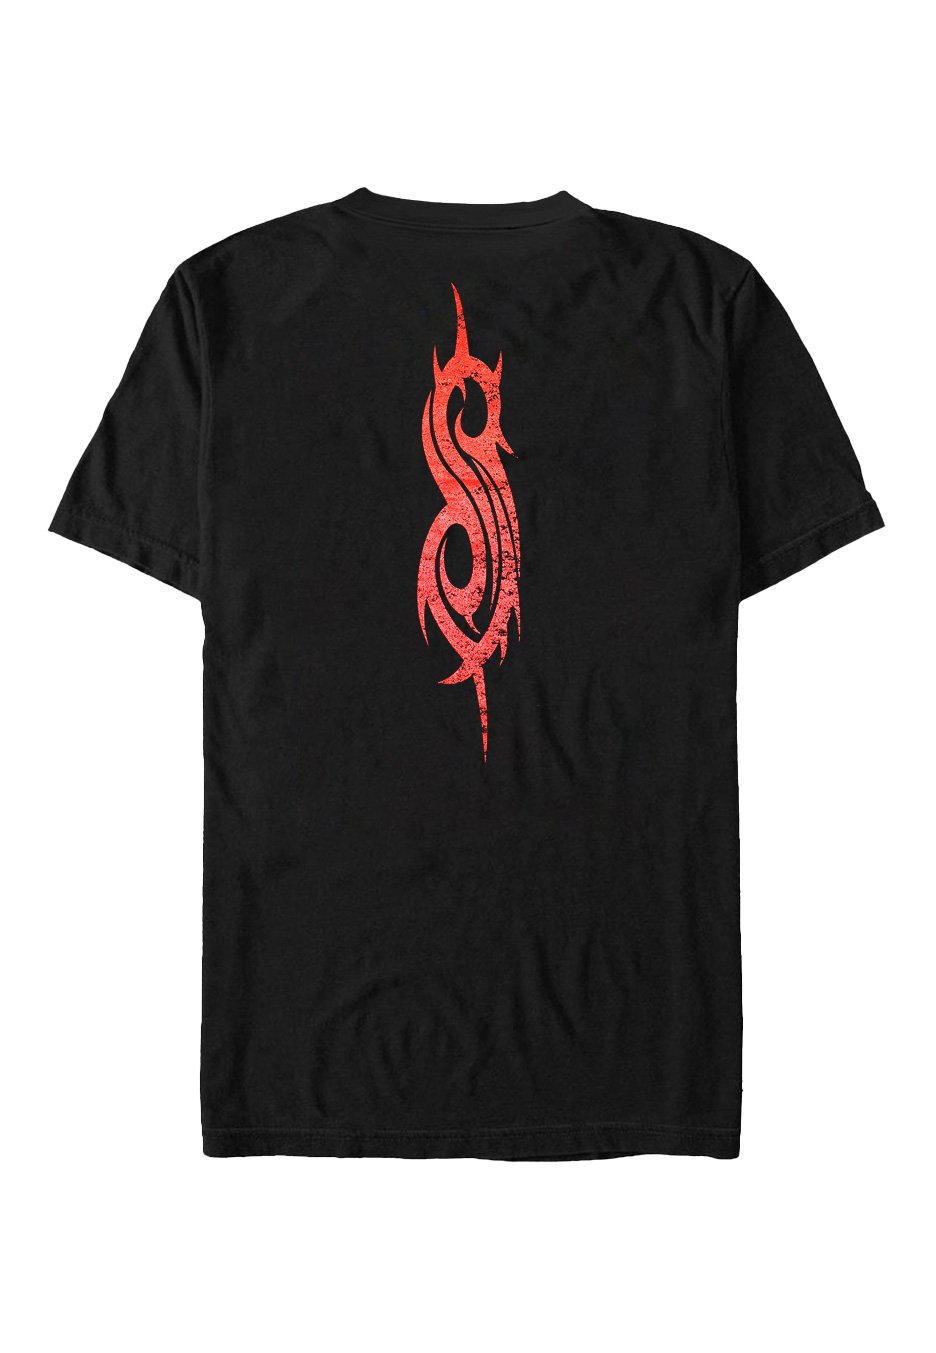 Slipknot - Iowa Goat - T-Shirt